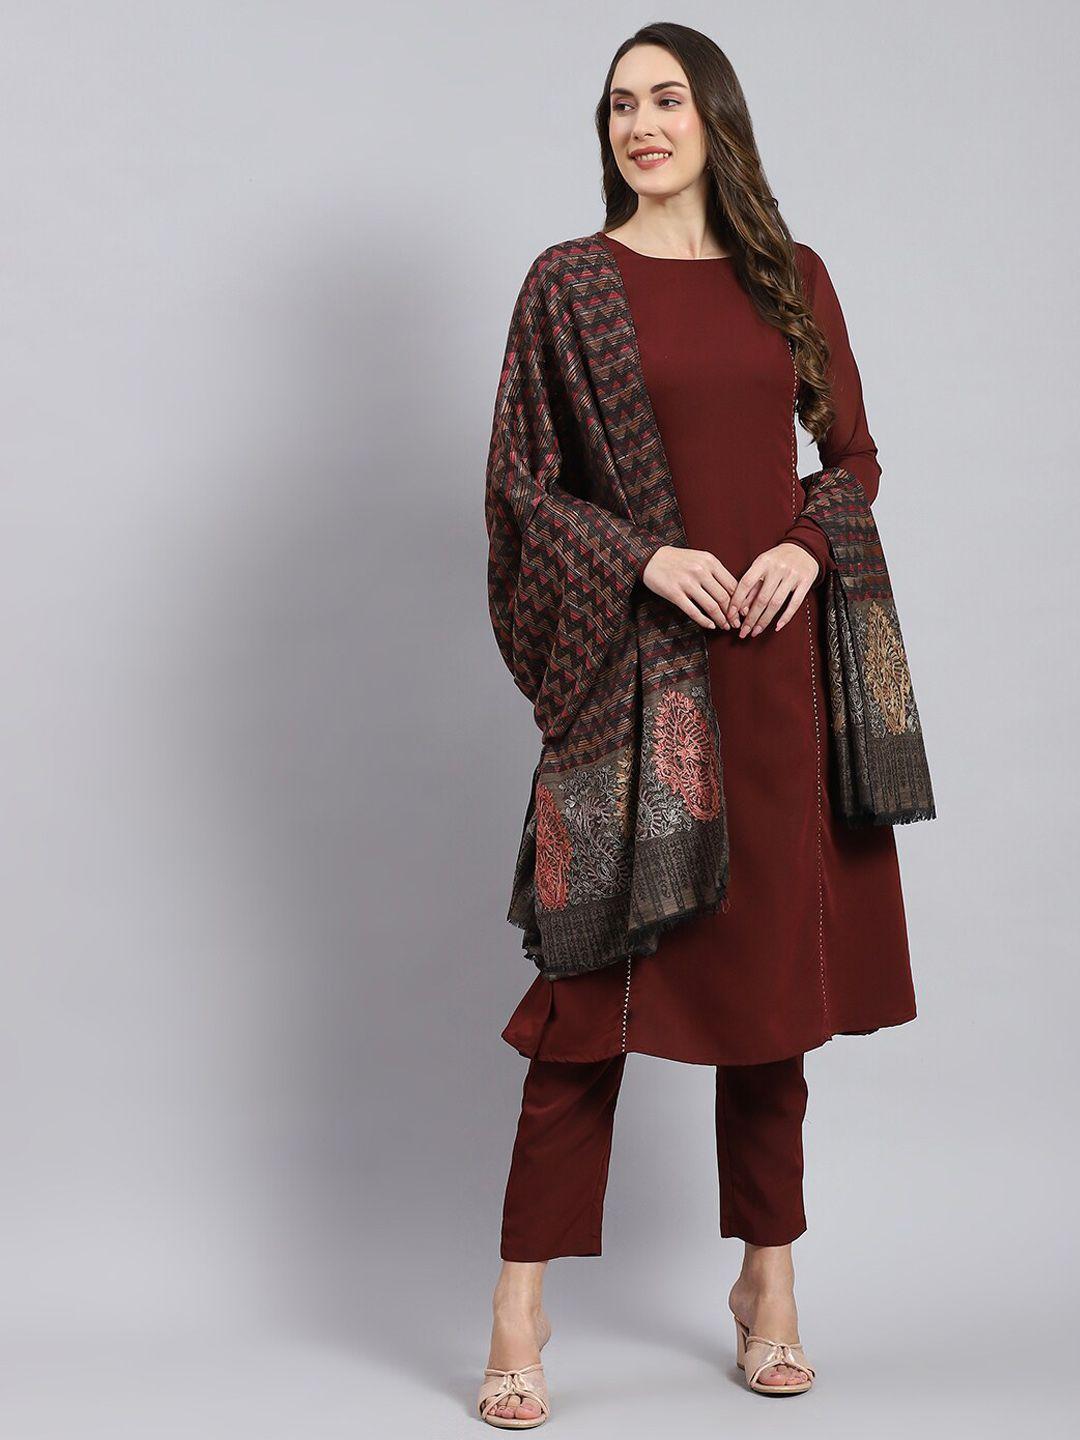 monte carlo ethnic motifs woven-design shawl